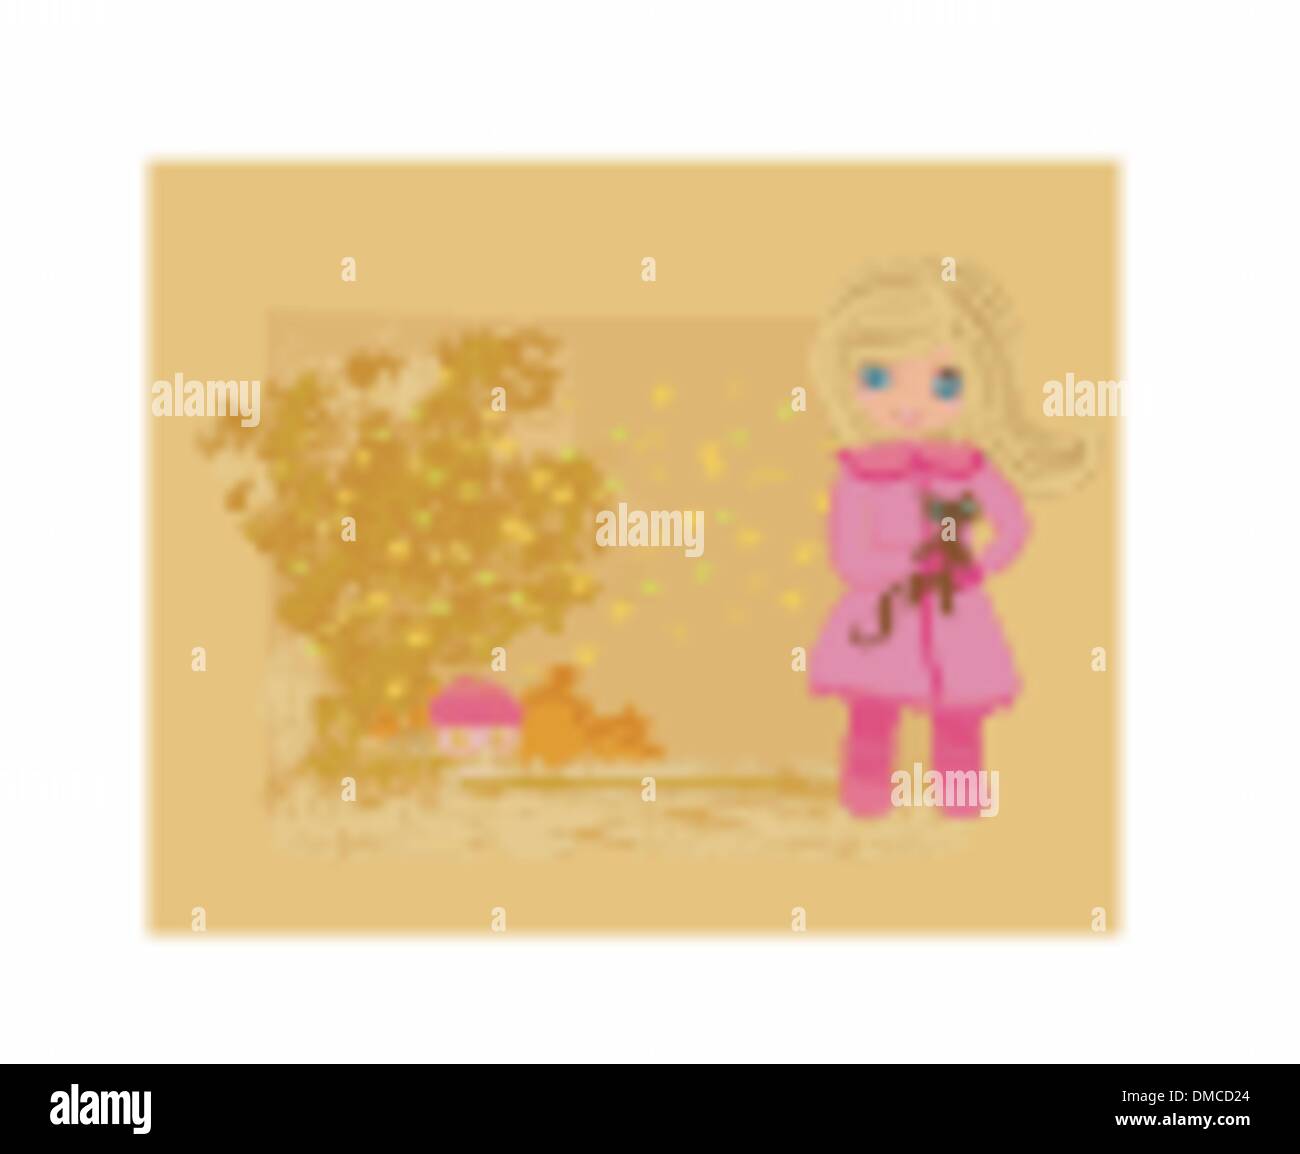 Sweet Girl in autumn park et son chat Illustration de Vecteur